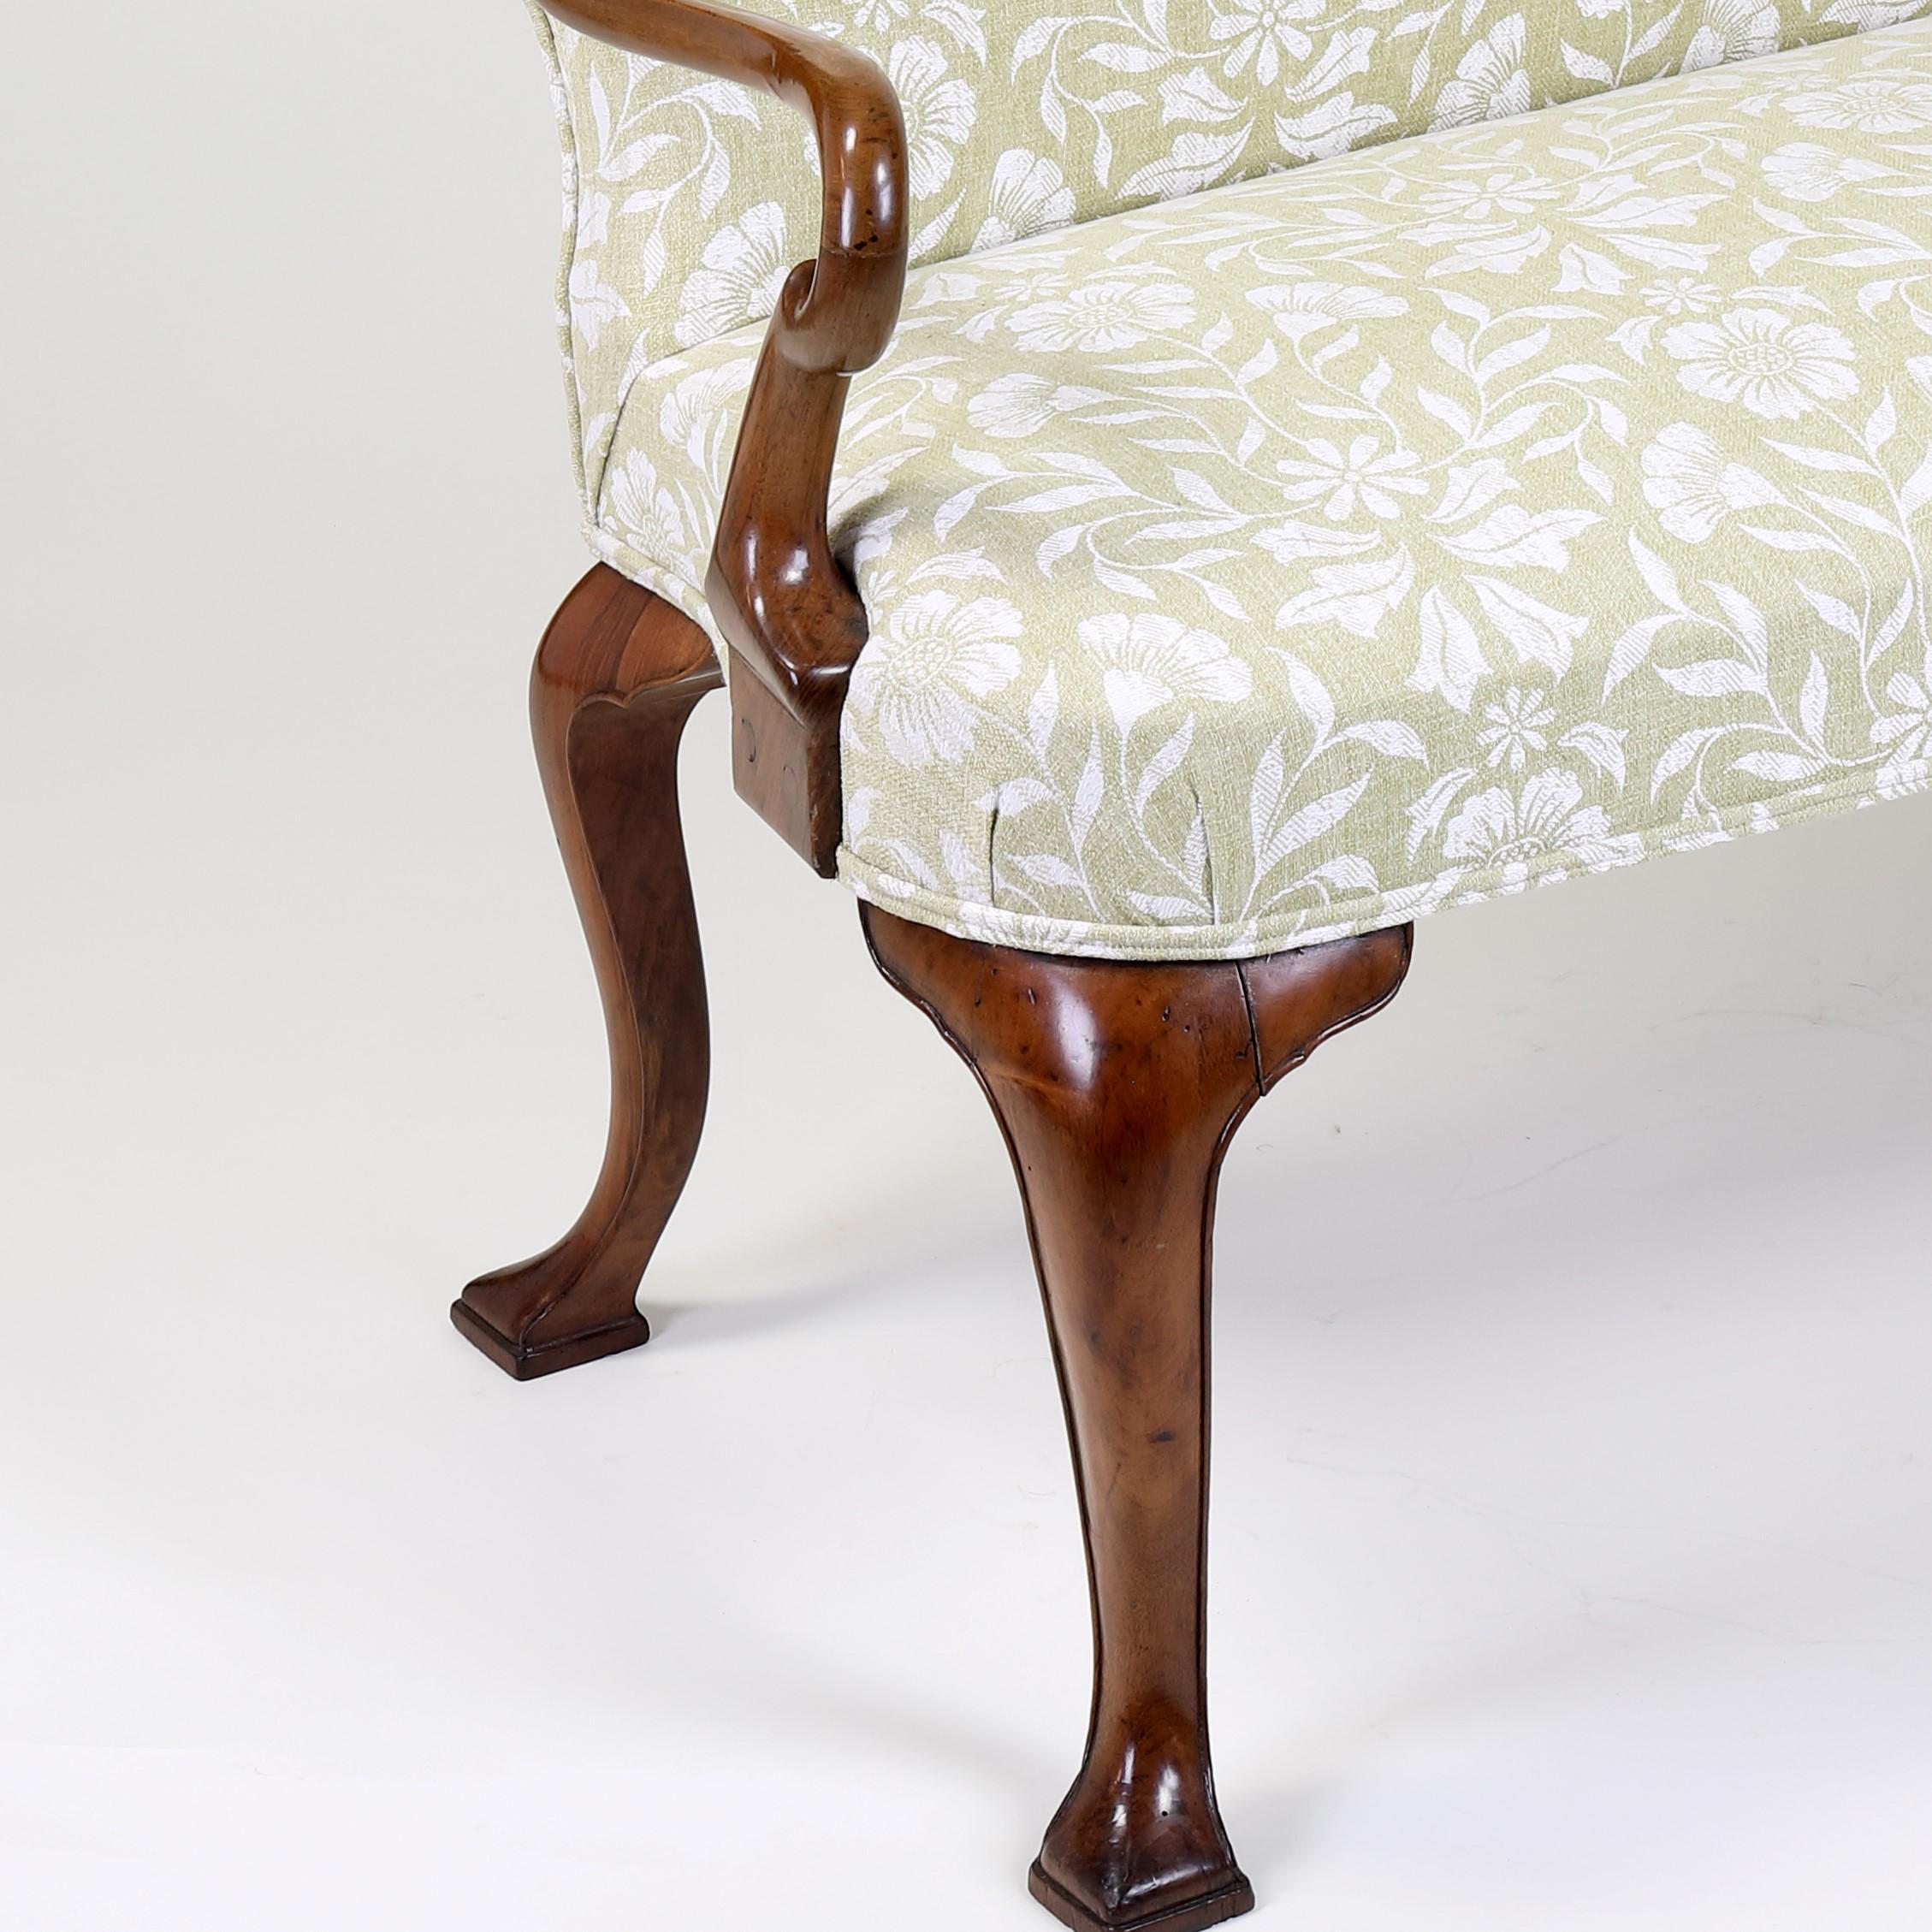 Ein ungemein attraktives Nussbaum-Liegesofa im George-II-Stil mit geformter, gepolsterter Rückenlehne über einem gepolsterten Sitz mit zwei geschwungenen Armen und stehend auf vier quadratischen Cabriole-Beinen. Die Sitzhöhe beträgt 18 Zoll.
Der